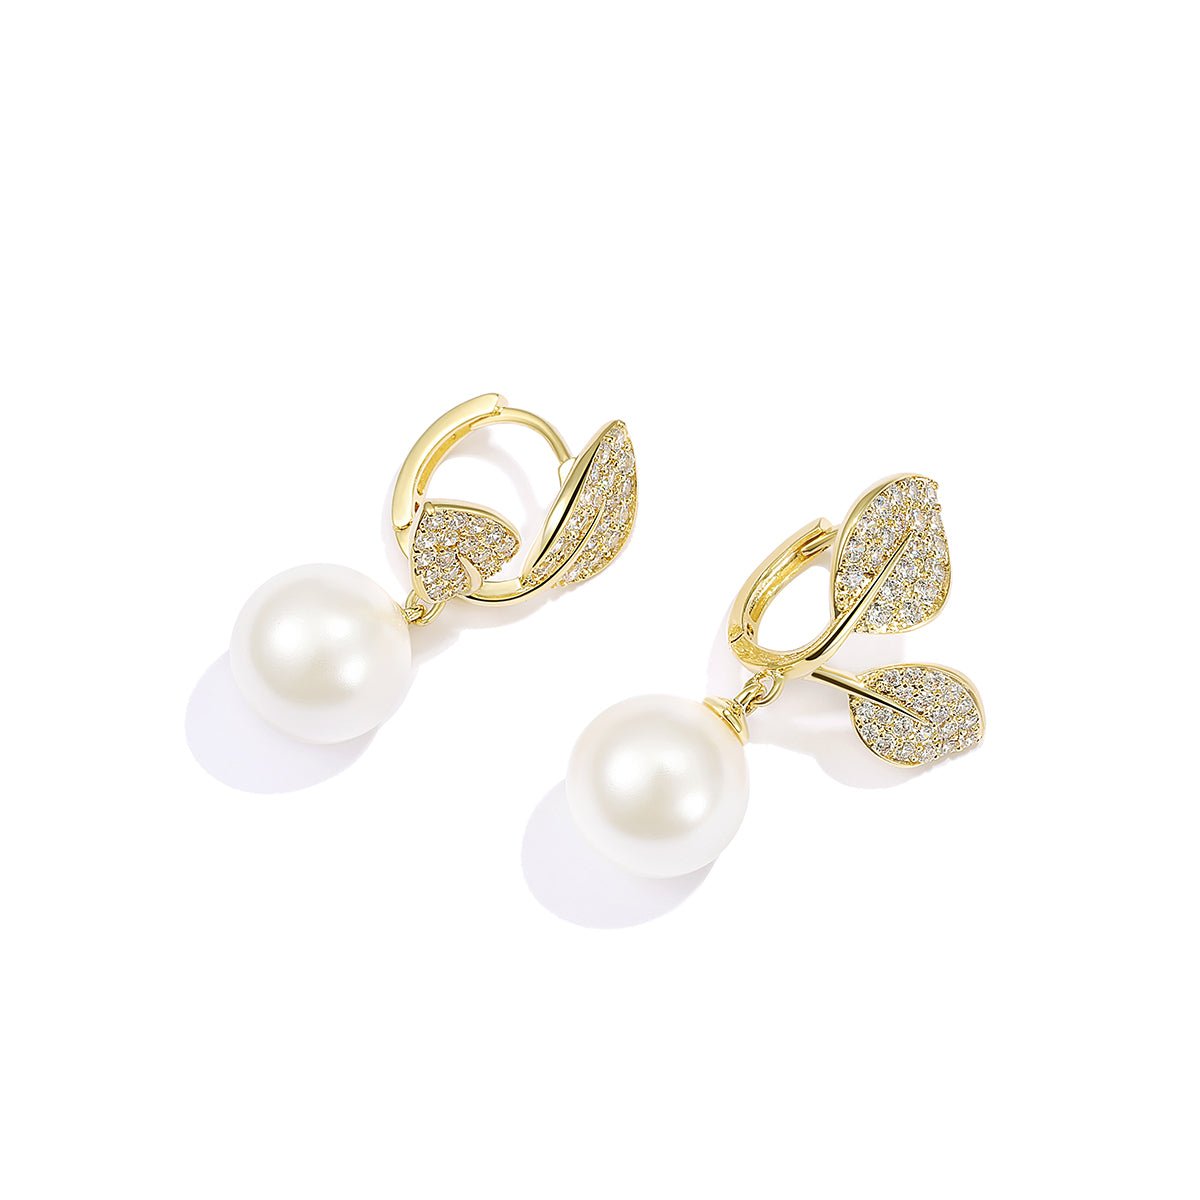 Leafy Day Gold Earrings - 0cm